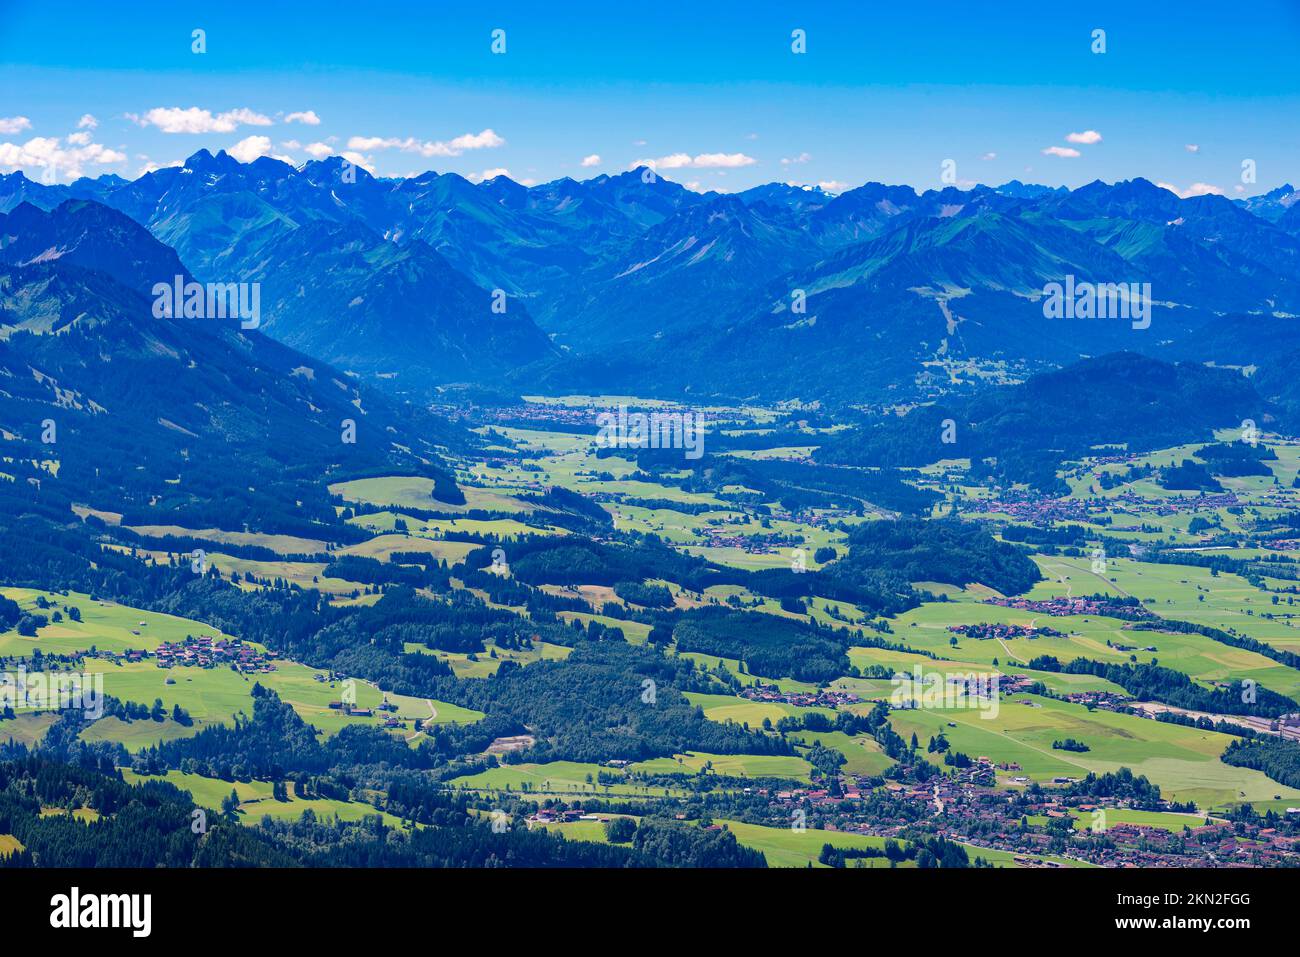 Panorama dal Grünten, 1738m m, nella valle dell'Illertal fino a Oberstdorf, con le Alpi Allgäu alle spalle, alta Allgäu, Allgäu, Baviera, Germania, Foto Stock